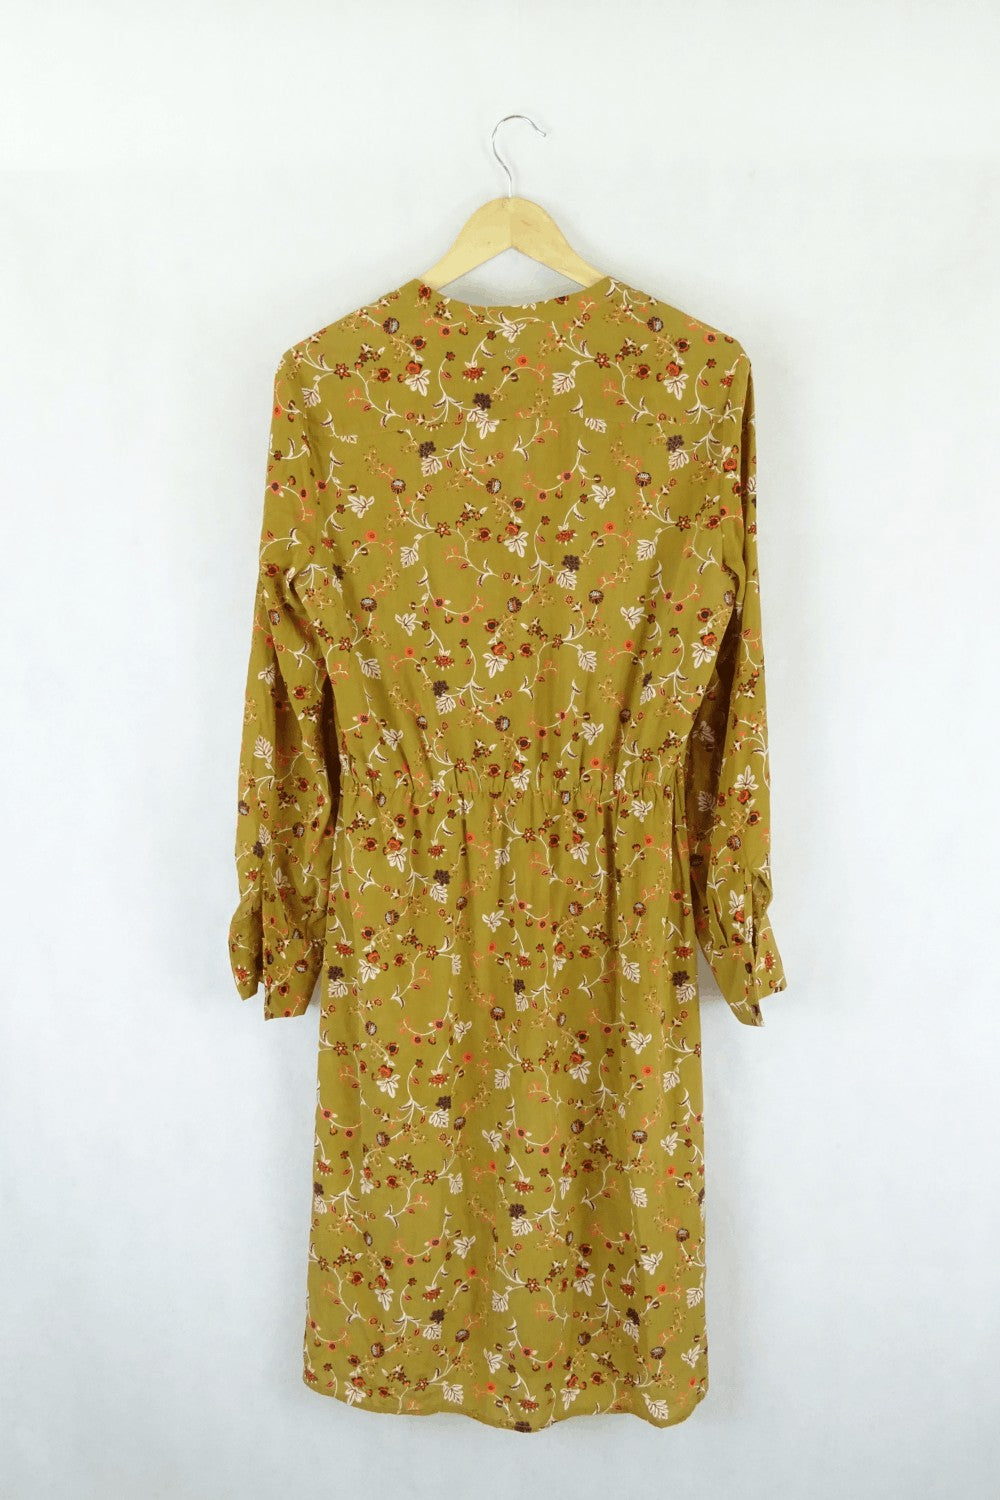 Julie Fagerholt Heartmade Mustard Floral Dress 38 (AU10)